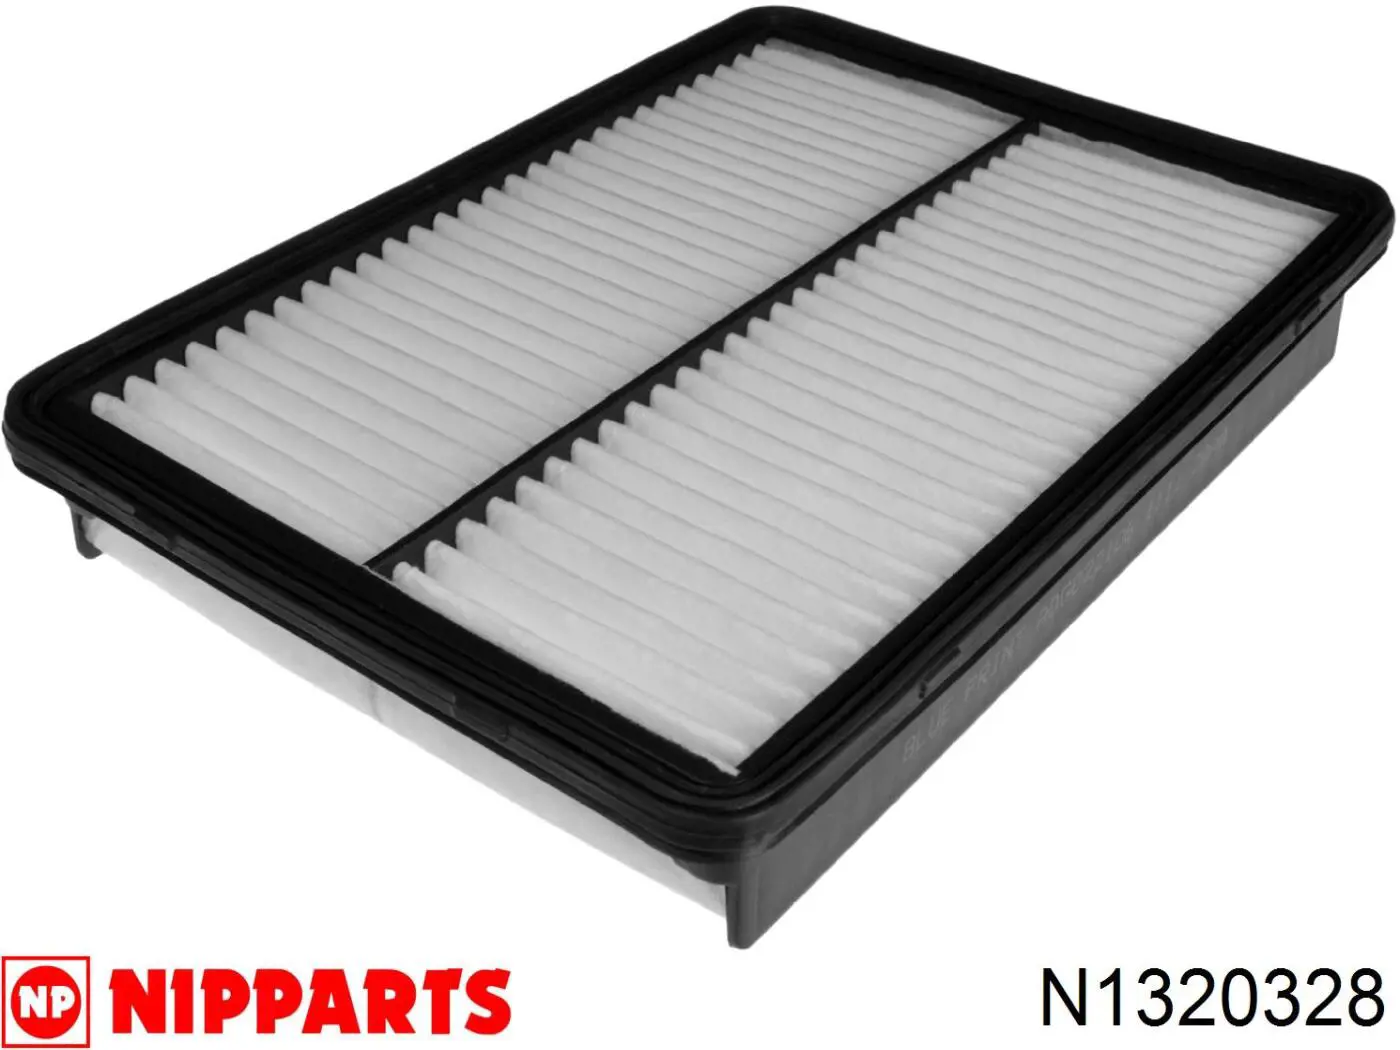 N1320328 Nipparts filtro de aire